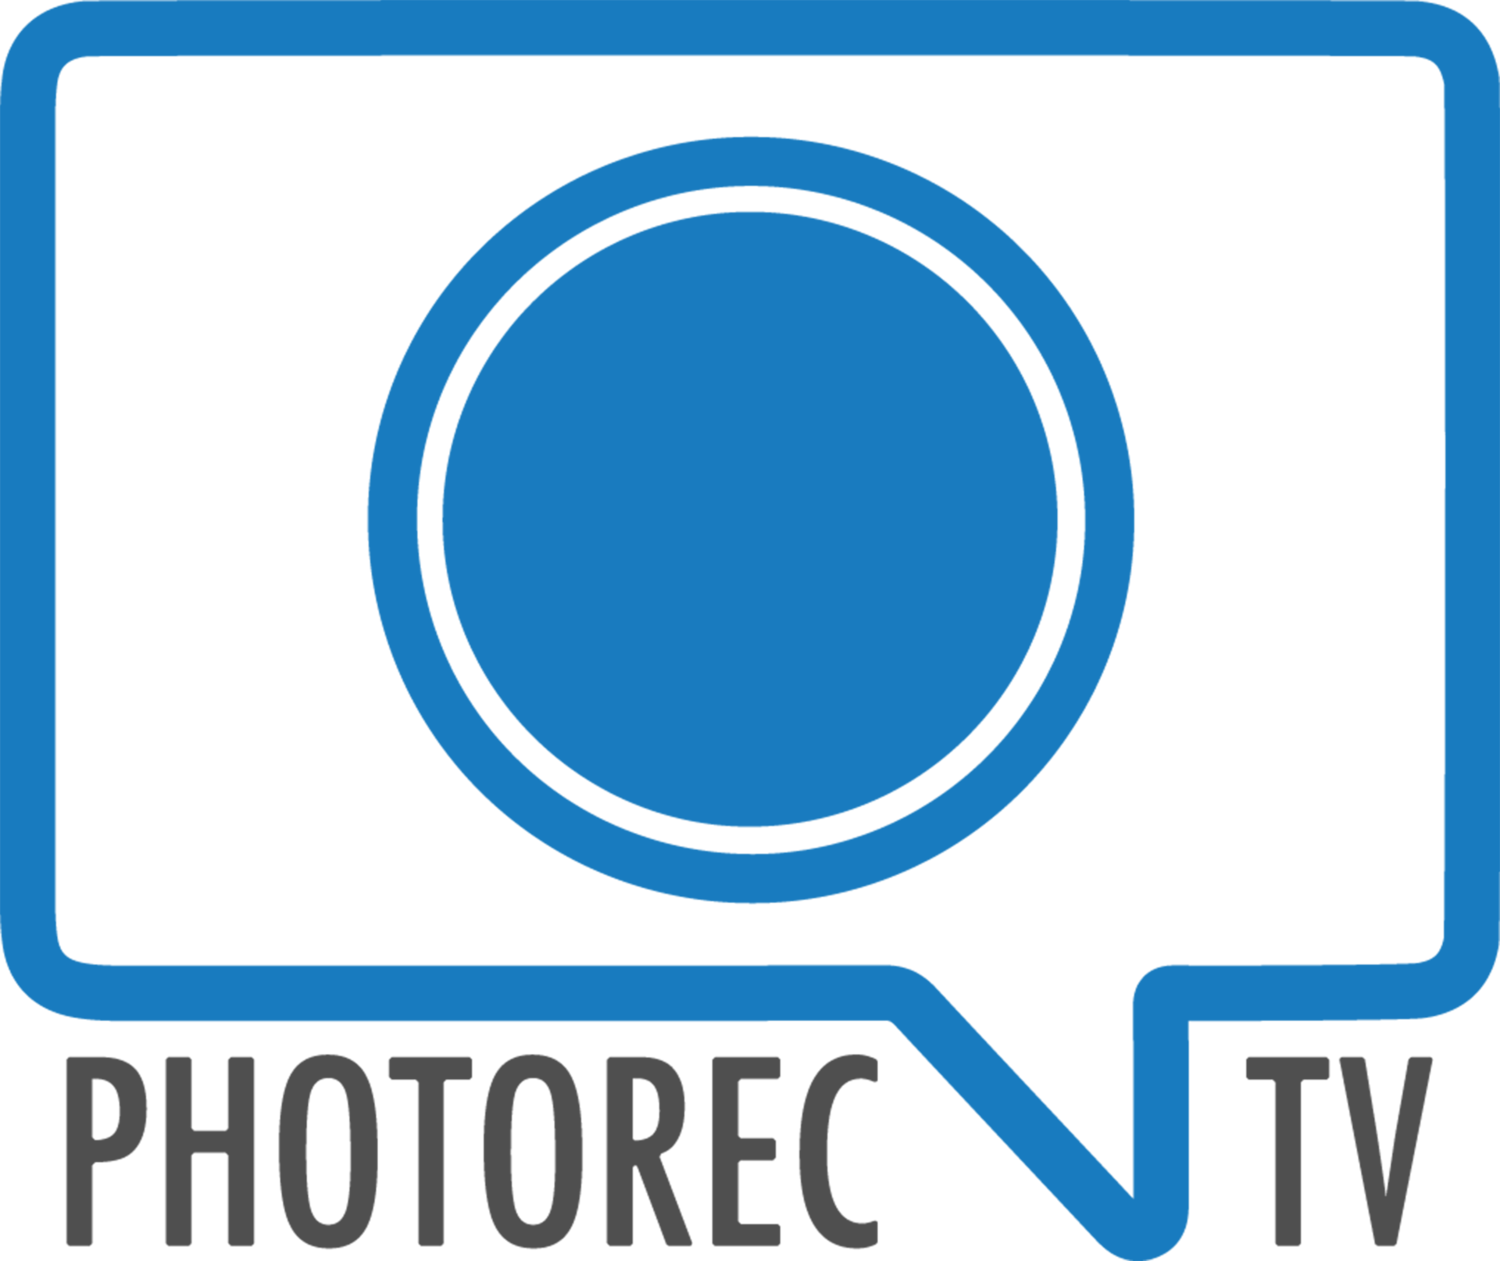 Photorec.tv